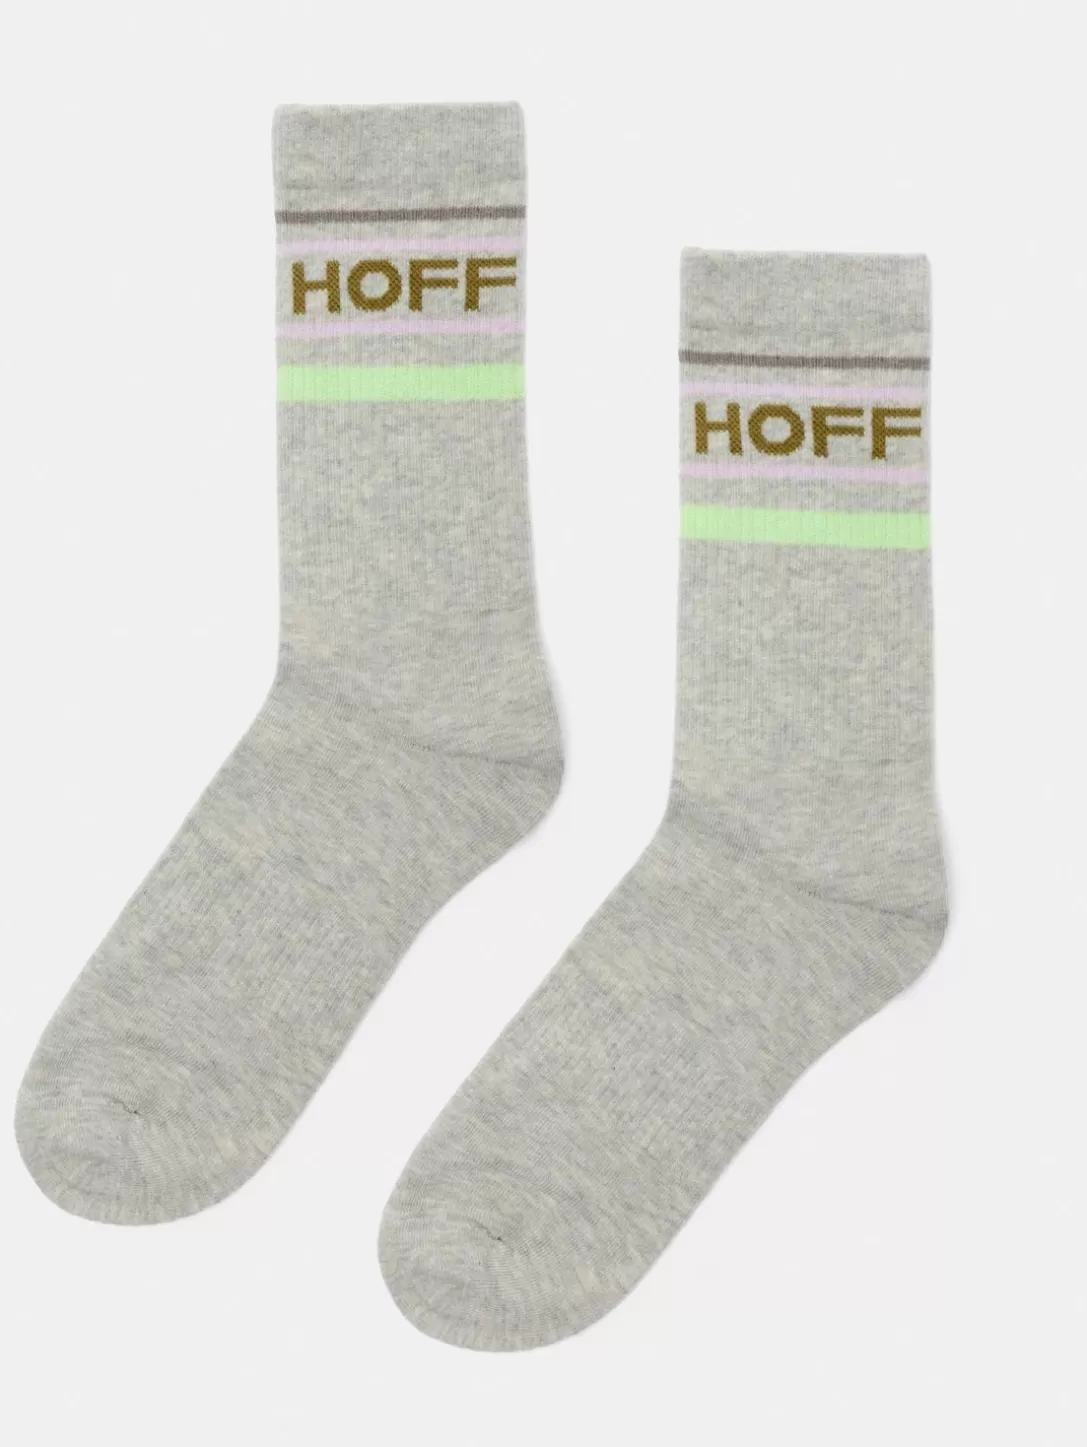 HOFF Soft Grey Socks Flash Sale